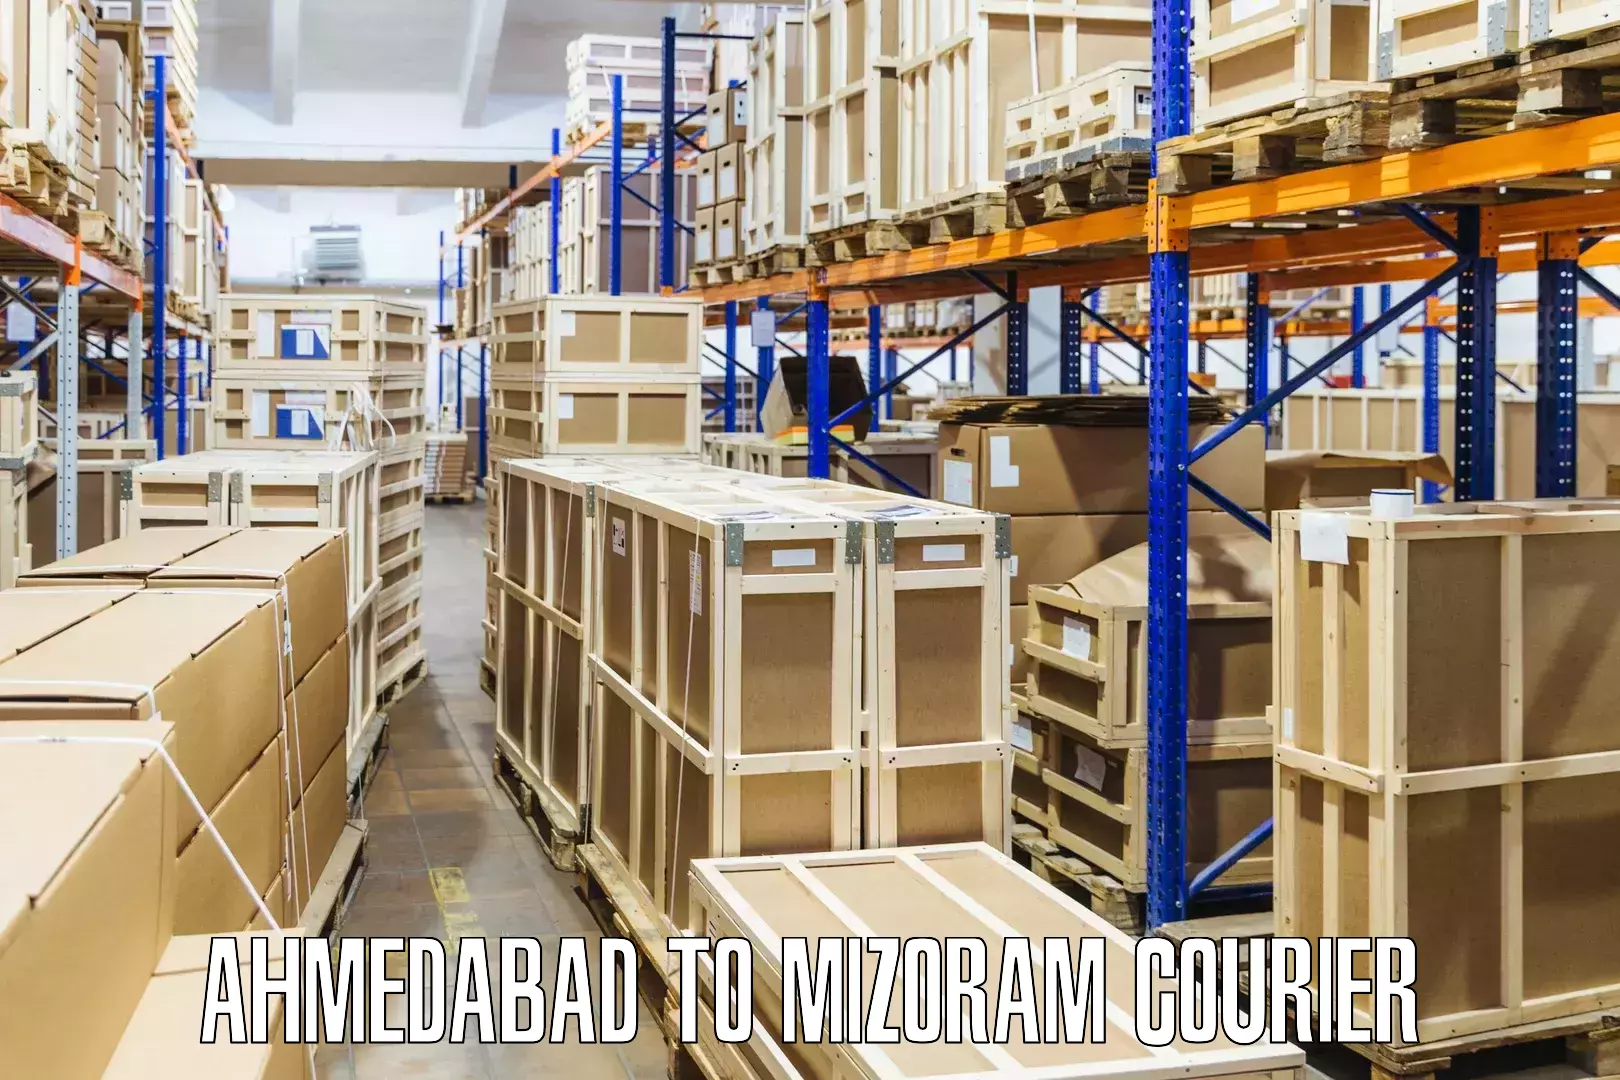 Multi-city courier Ahmedabad to Mizoram